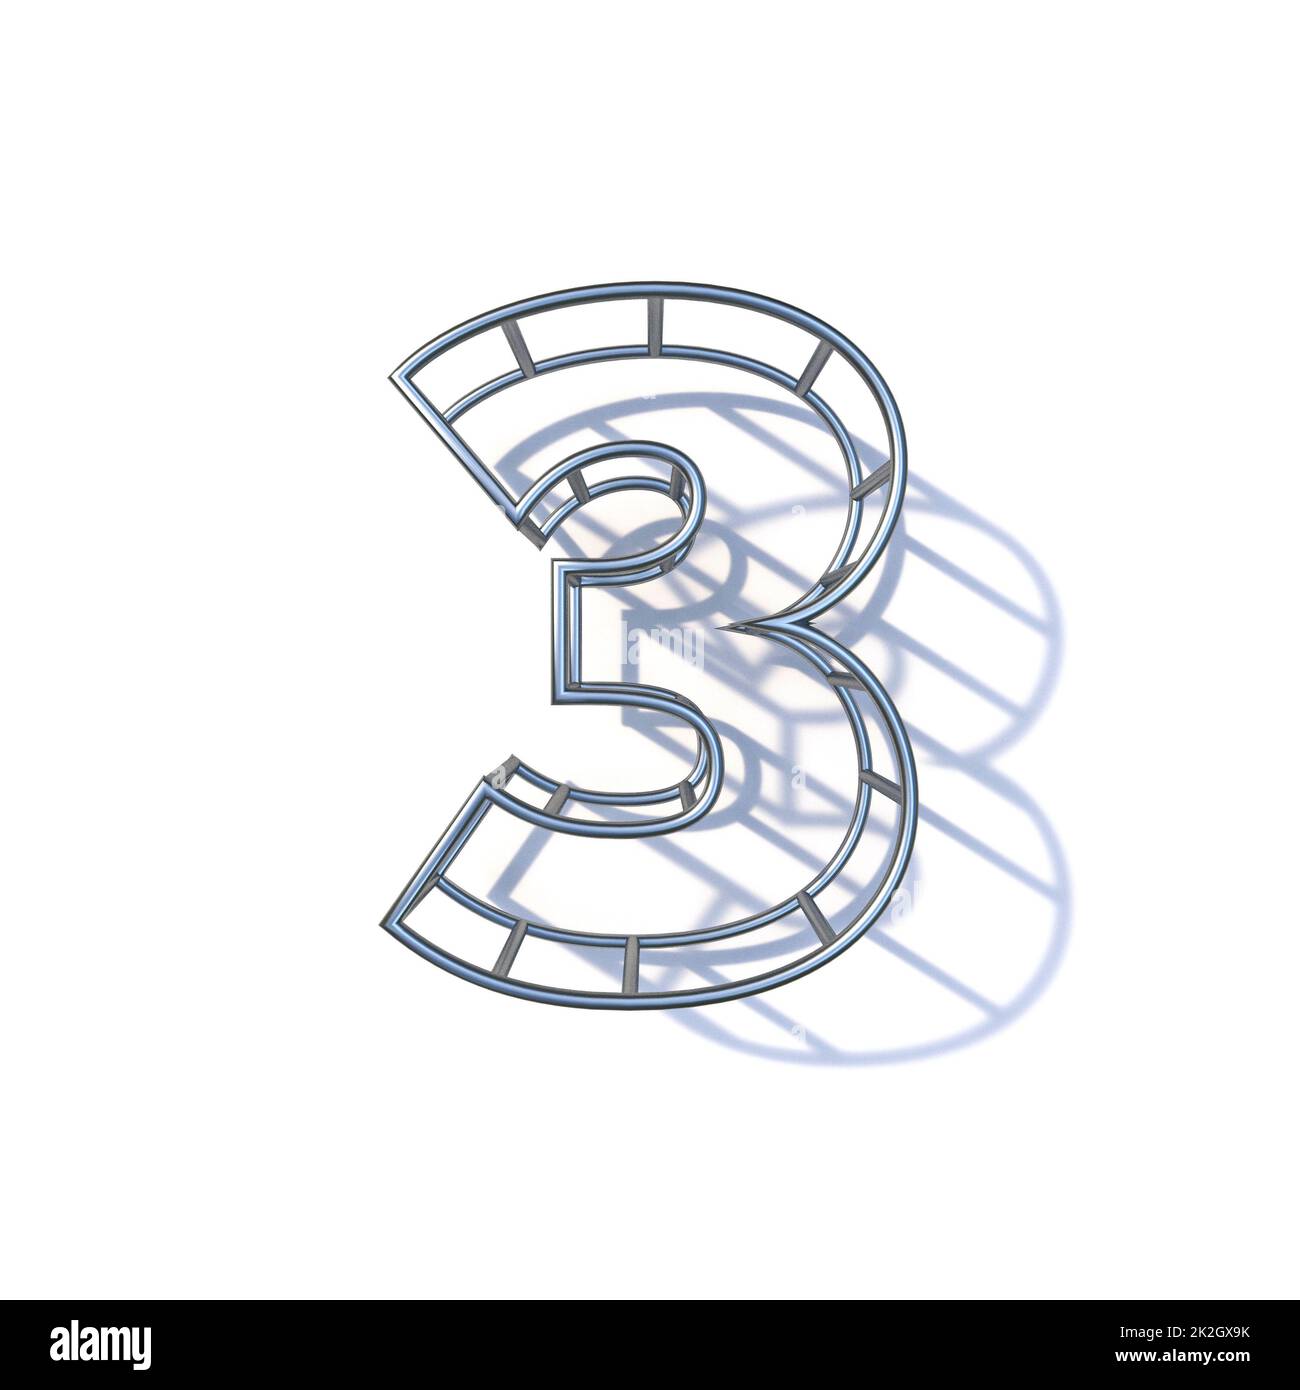 Motorrad Rahmen auf Weiß. 3D-Darstellung Stockfotografie - Alamy